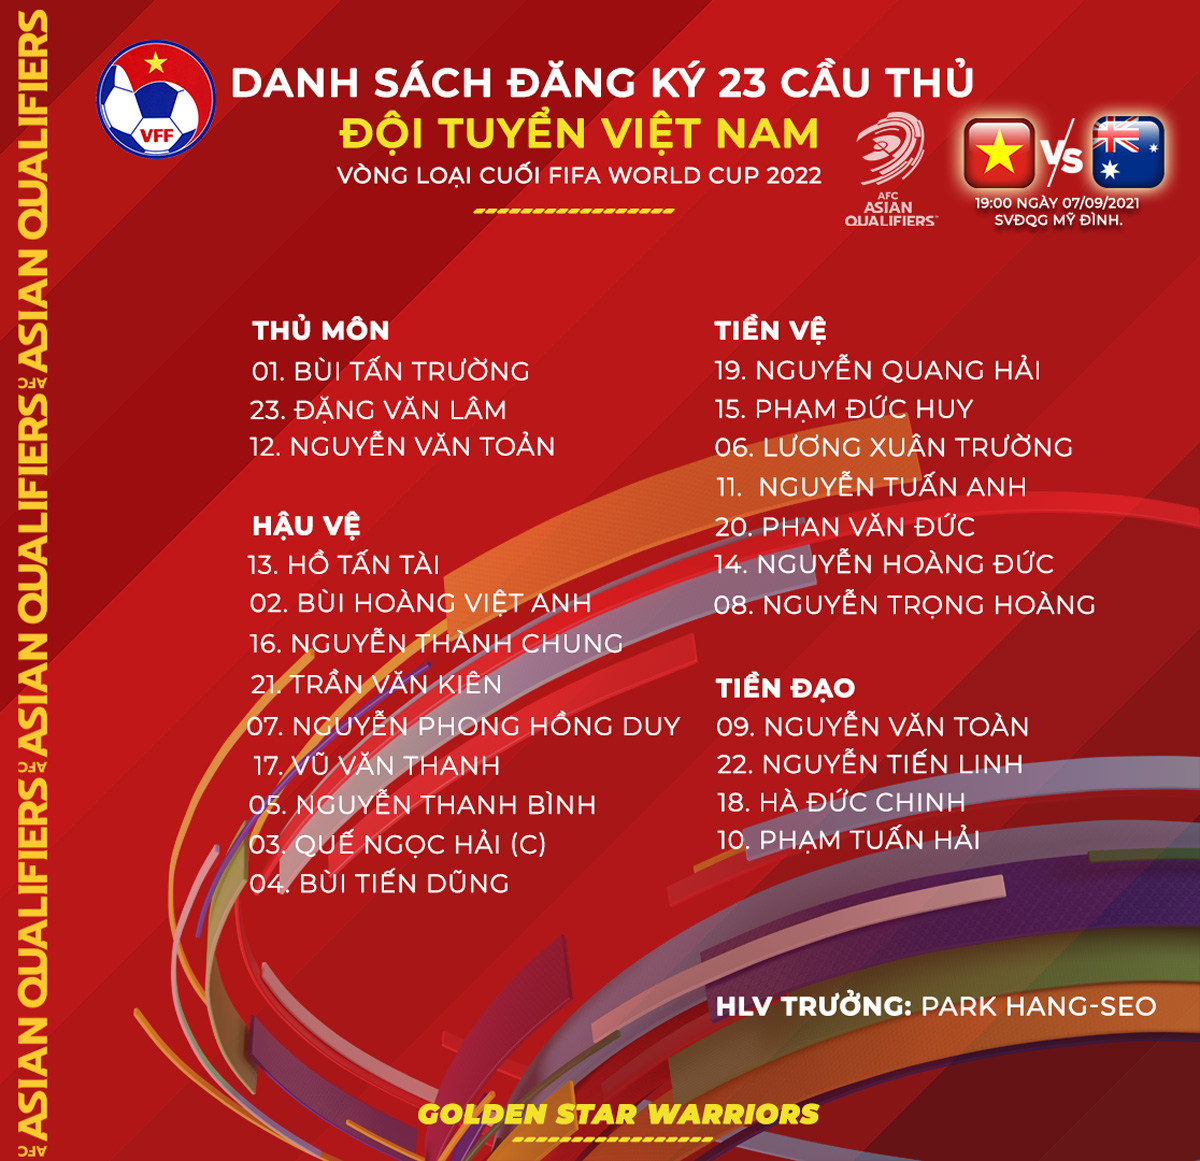 Việt Nam sẽ tham dự vòng loại World Cup 2026 khu vực châu Á ở vòng hai